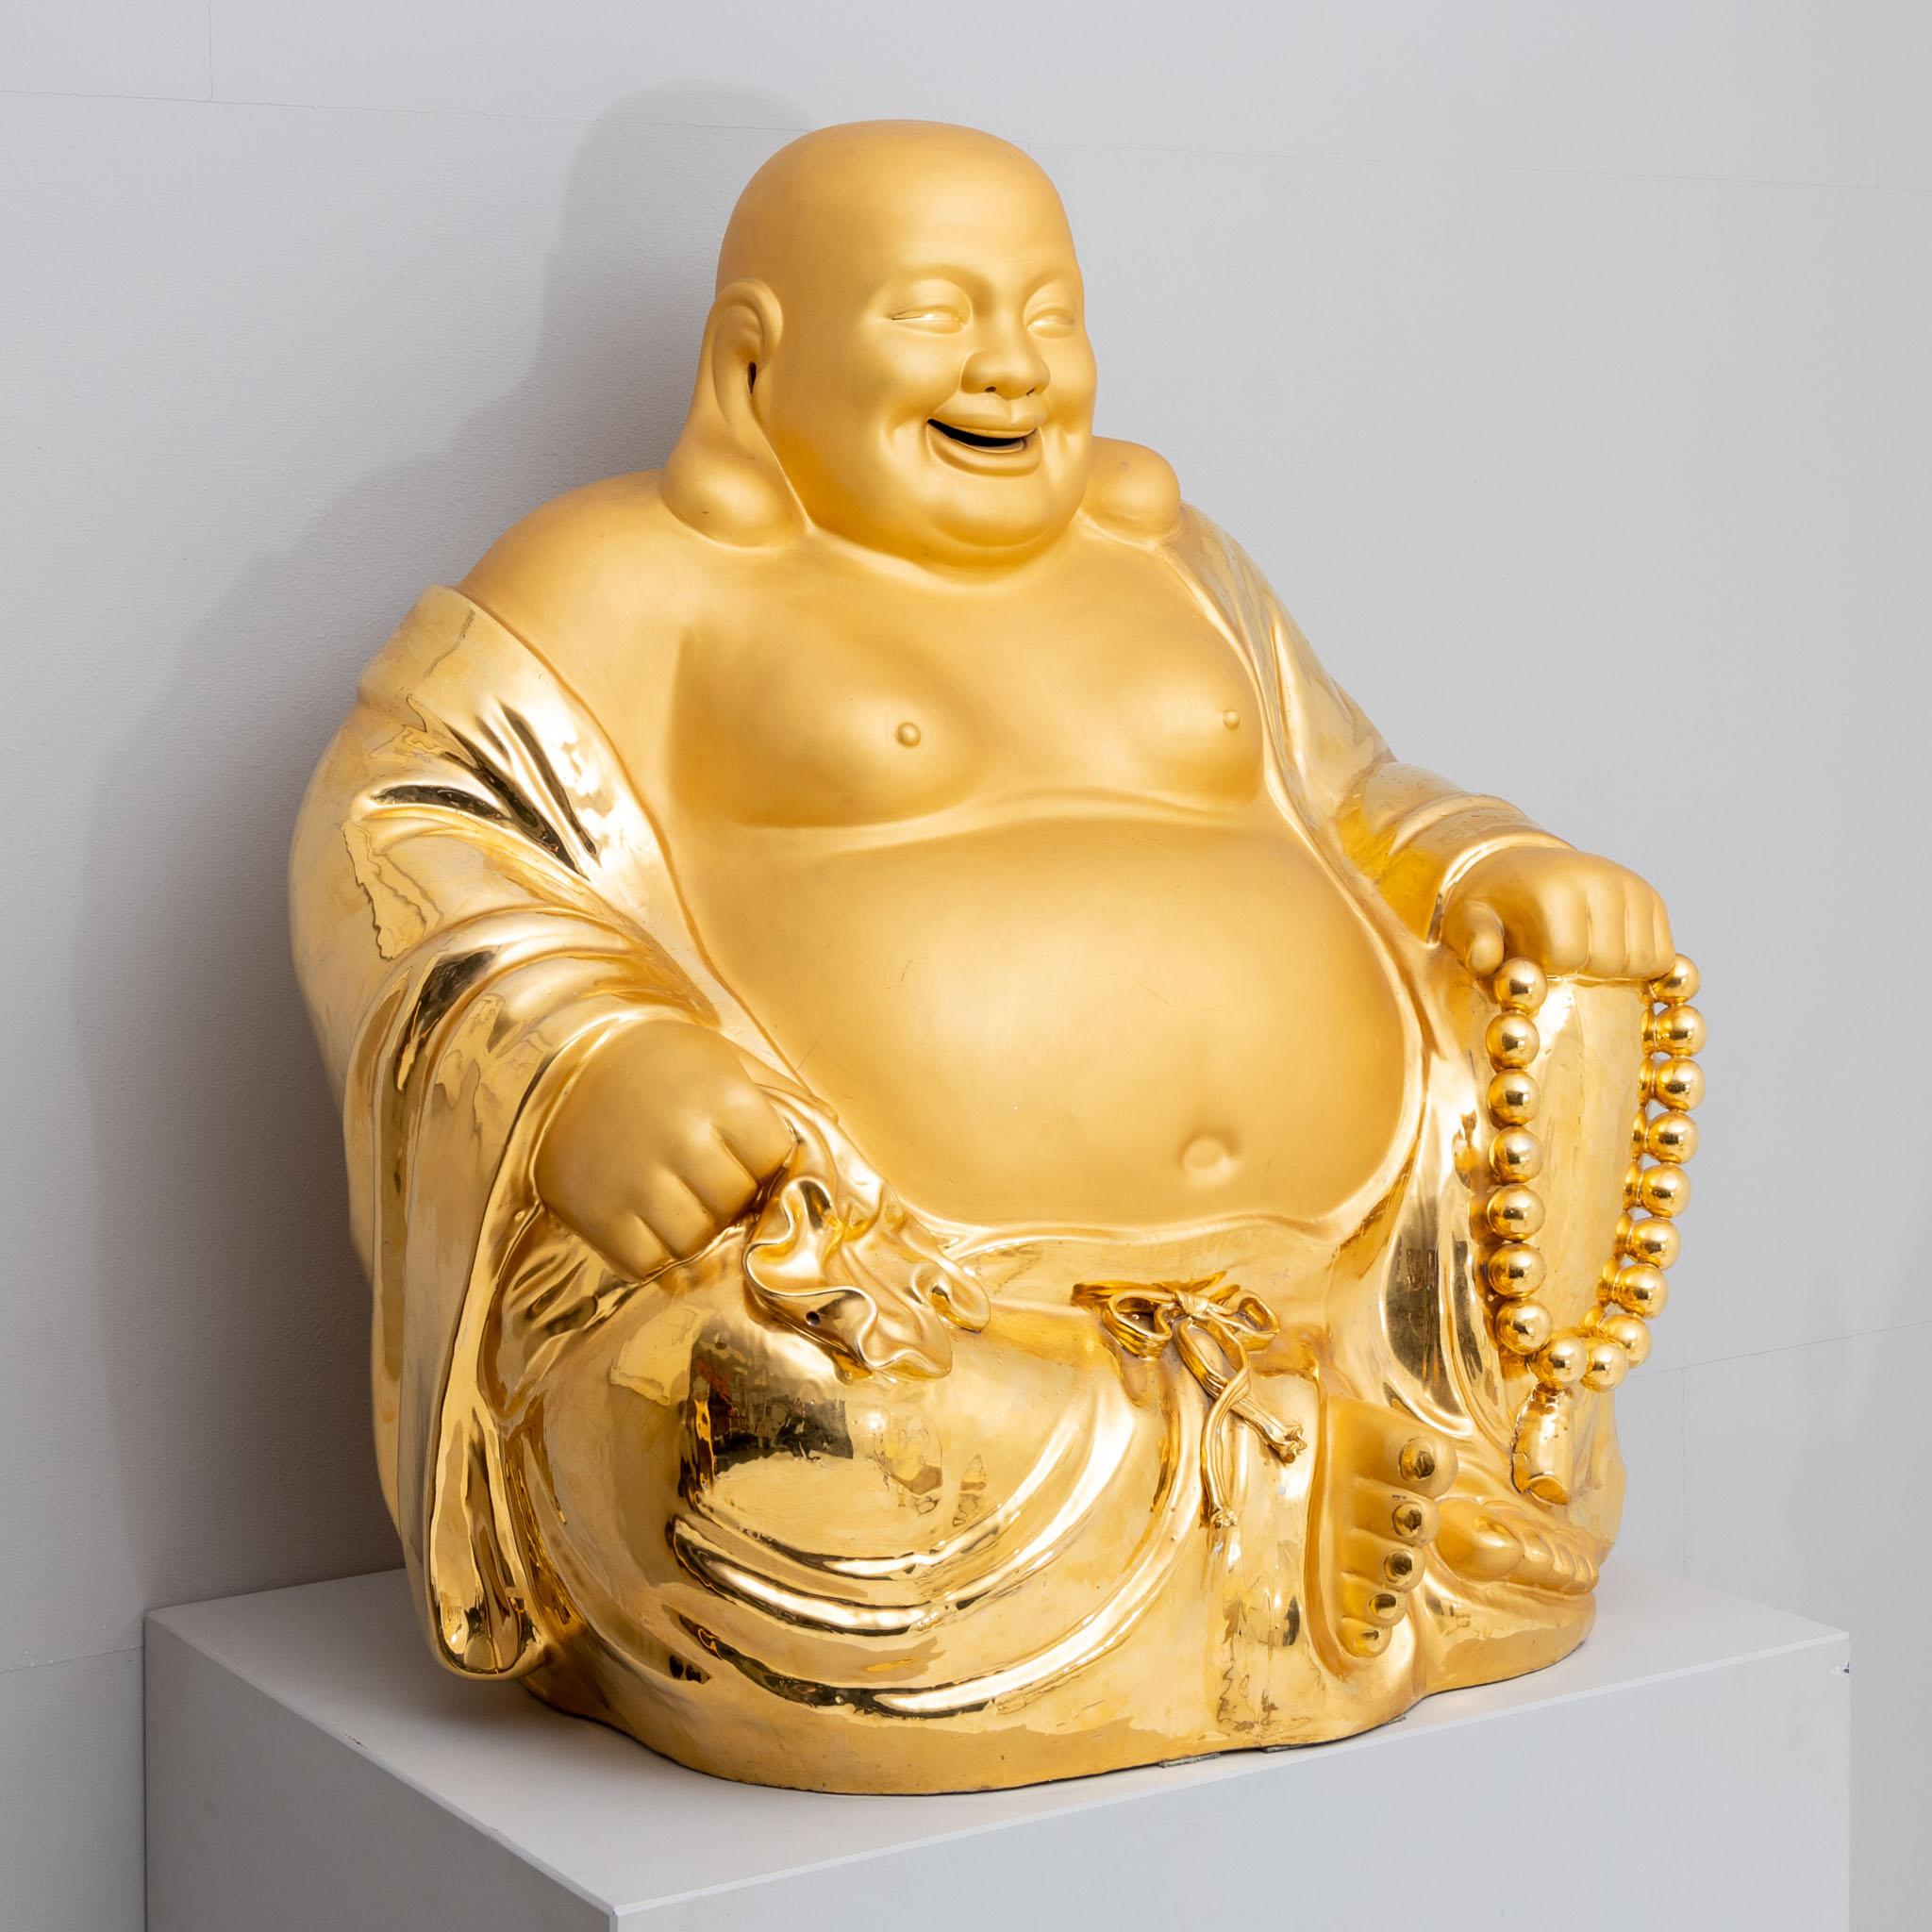 Sehr großer Happy Buddha aus Porzellan mit goldener Patinierung.